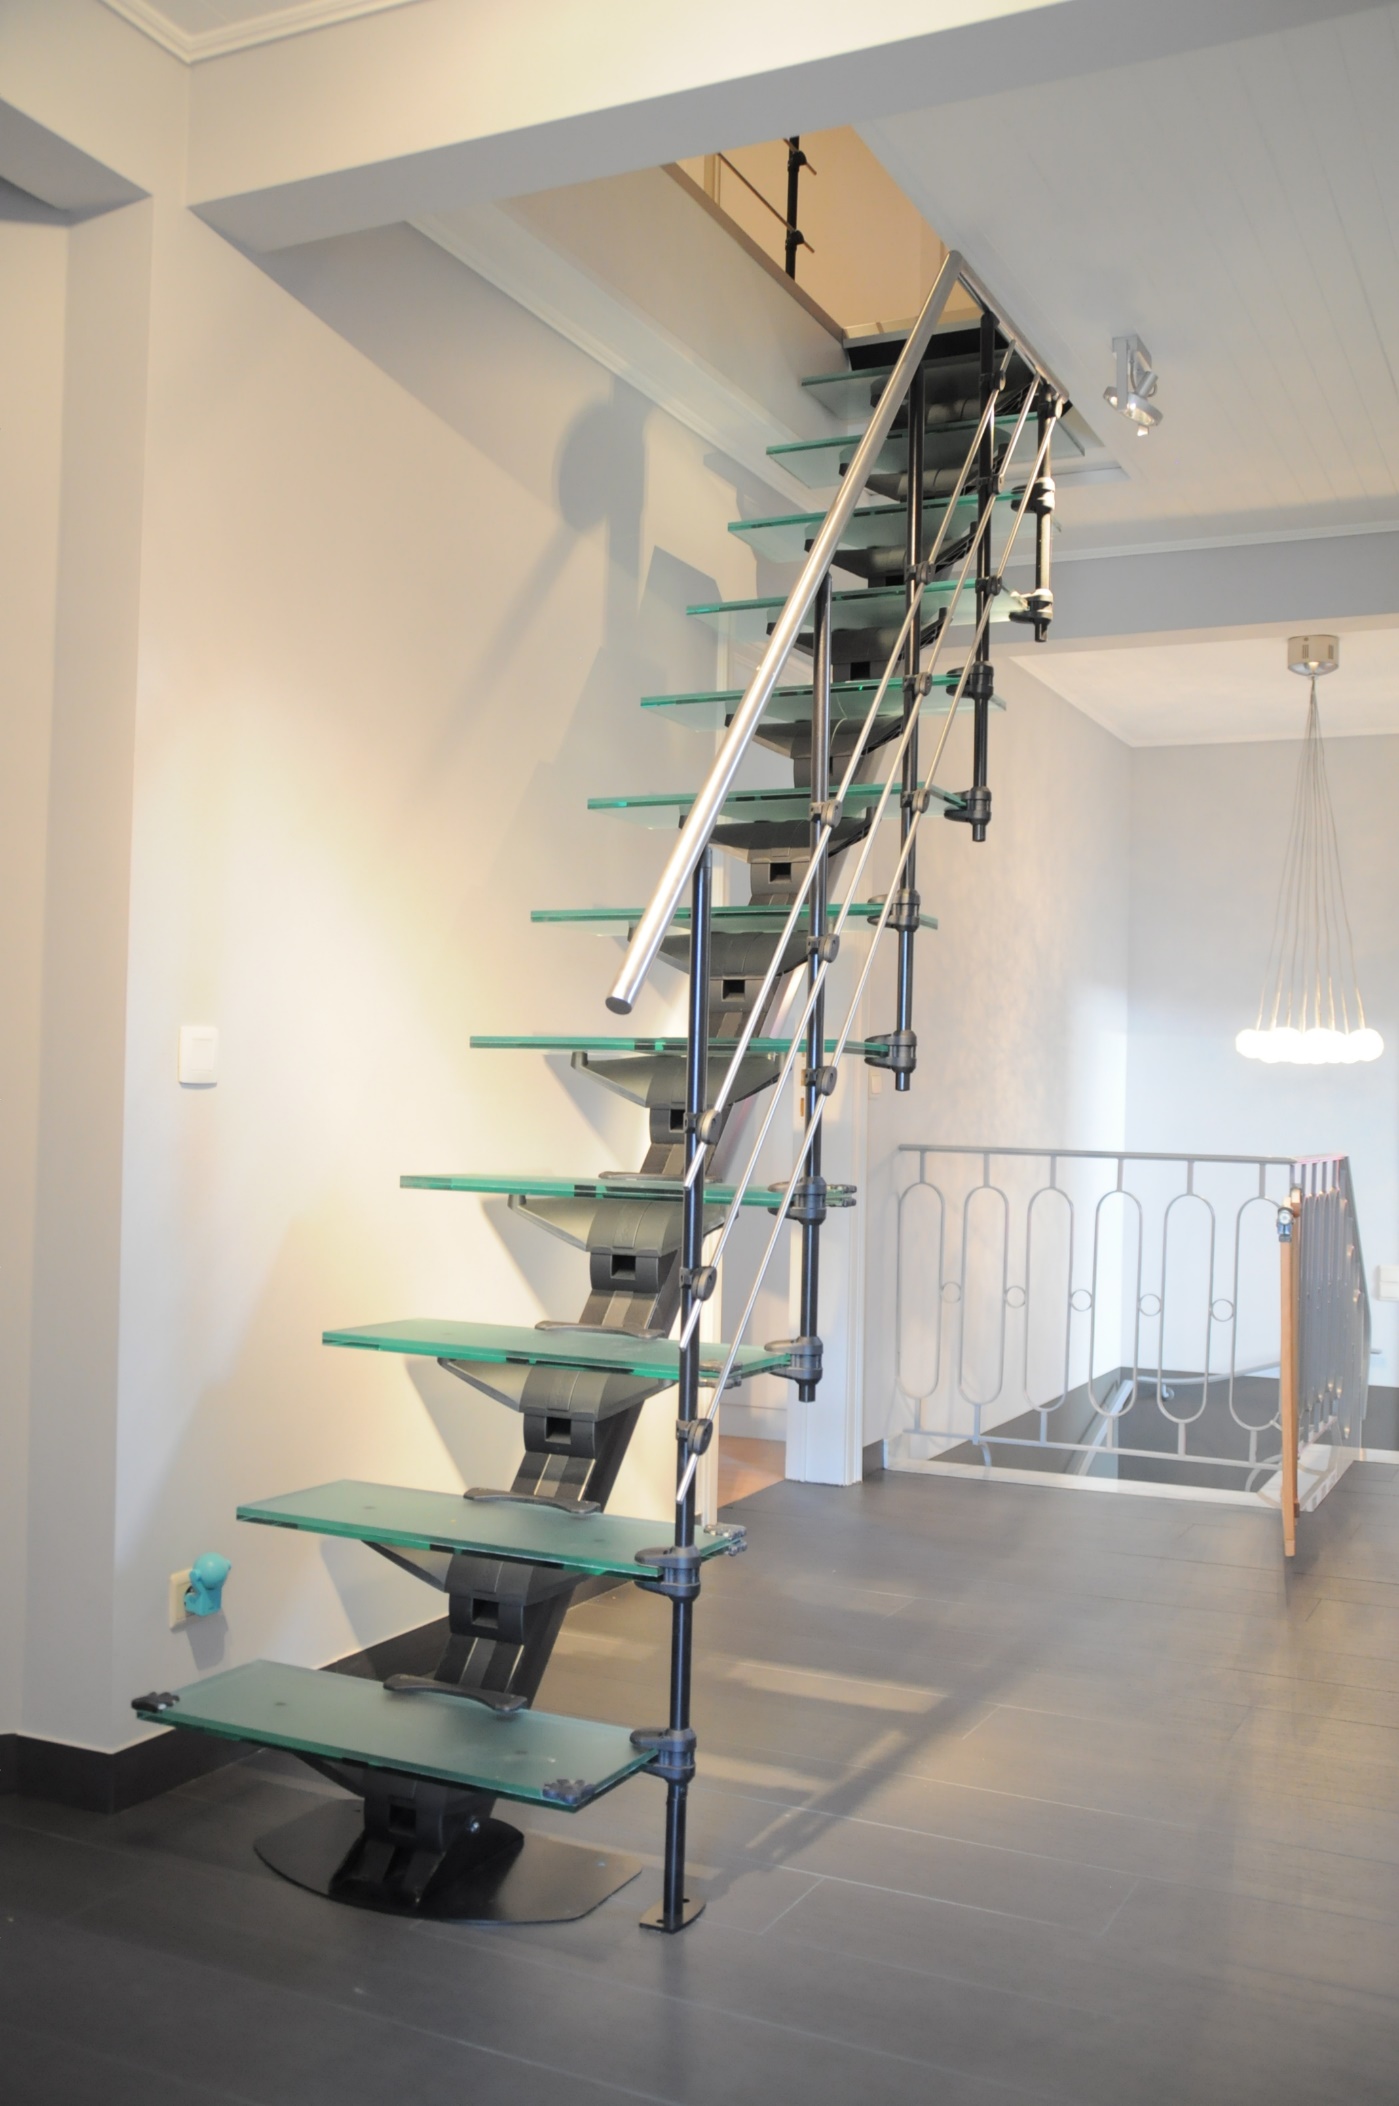 Фото модульной лестницы Do-Up (Бельгия), ведущей на третий этаж в загородном доме, цена со склада в Москве 180000 рублей (июнь 2015 г.)